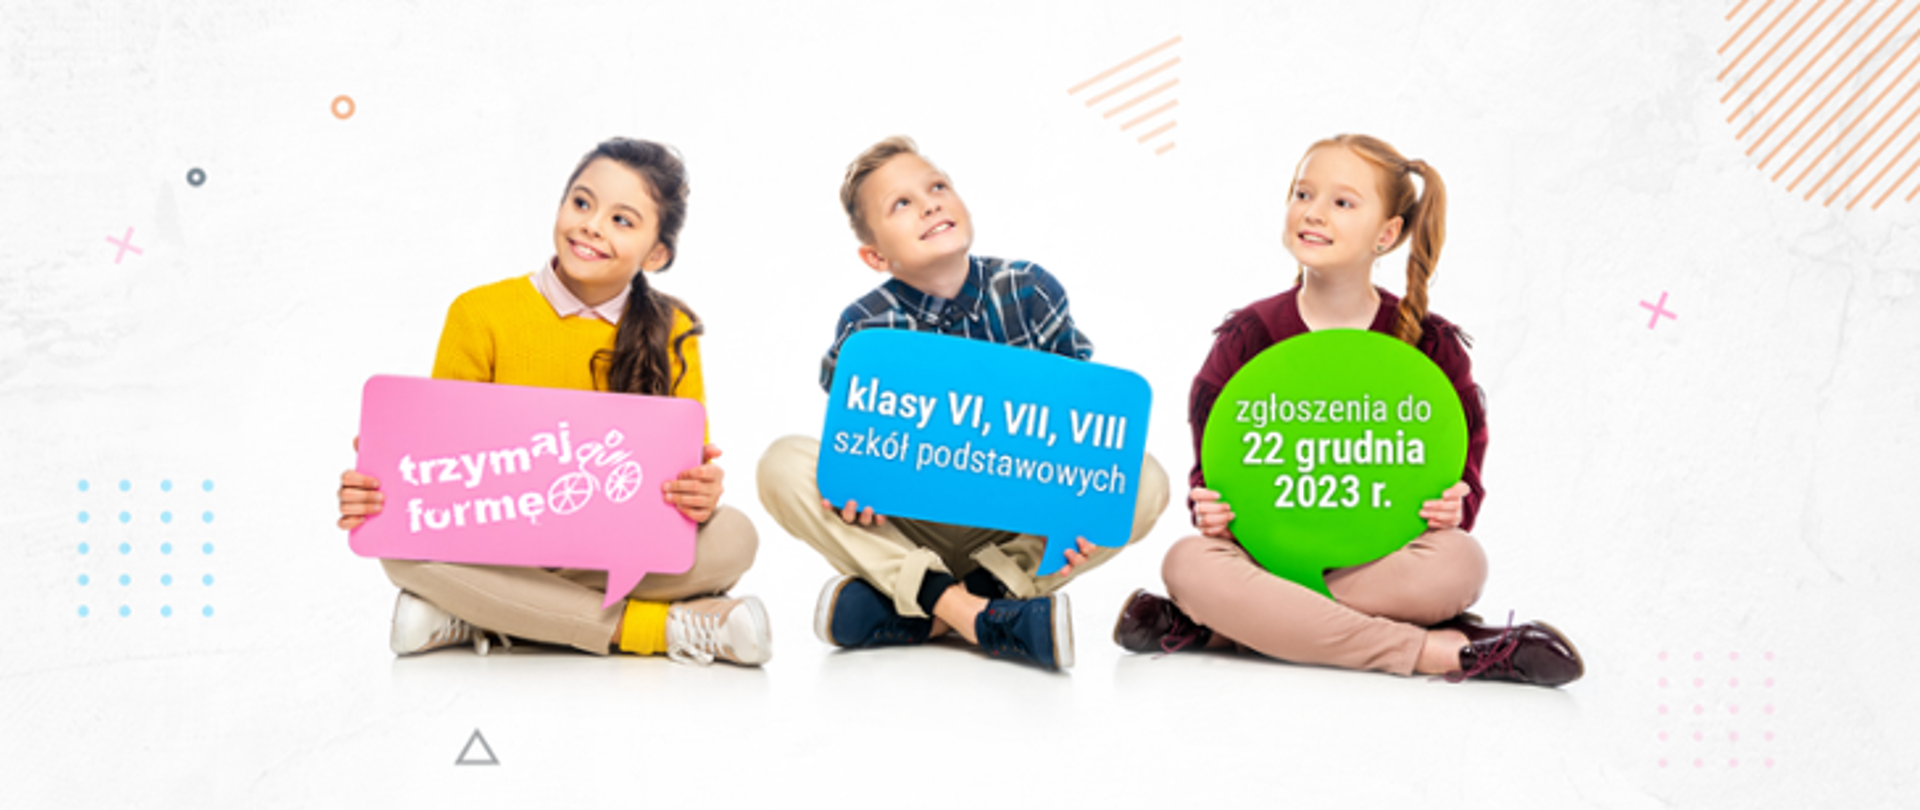 Grupa dzieci z plakatami o treści Trzymaj formę, klasy Vi VII VIII zgłoszenia do 23 grudnia 2023 r.